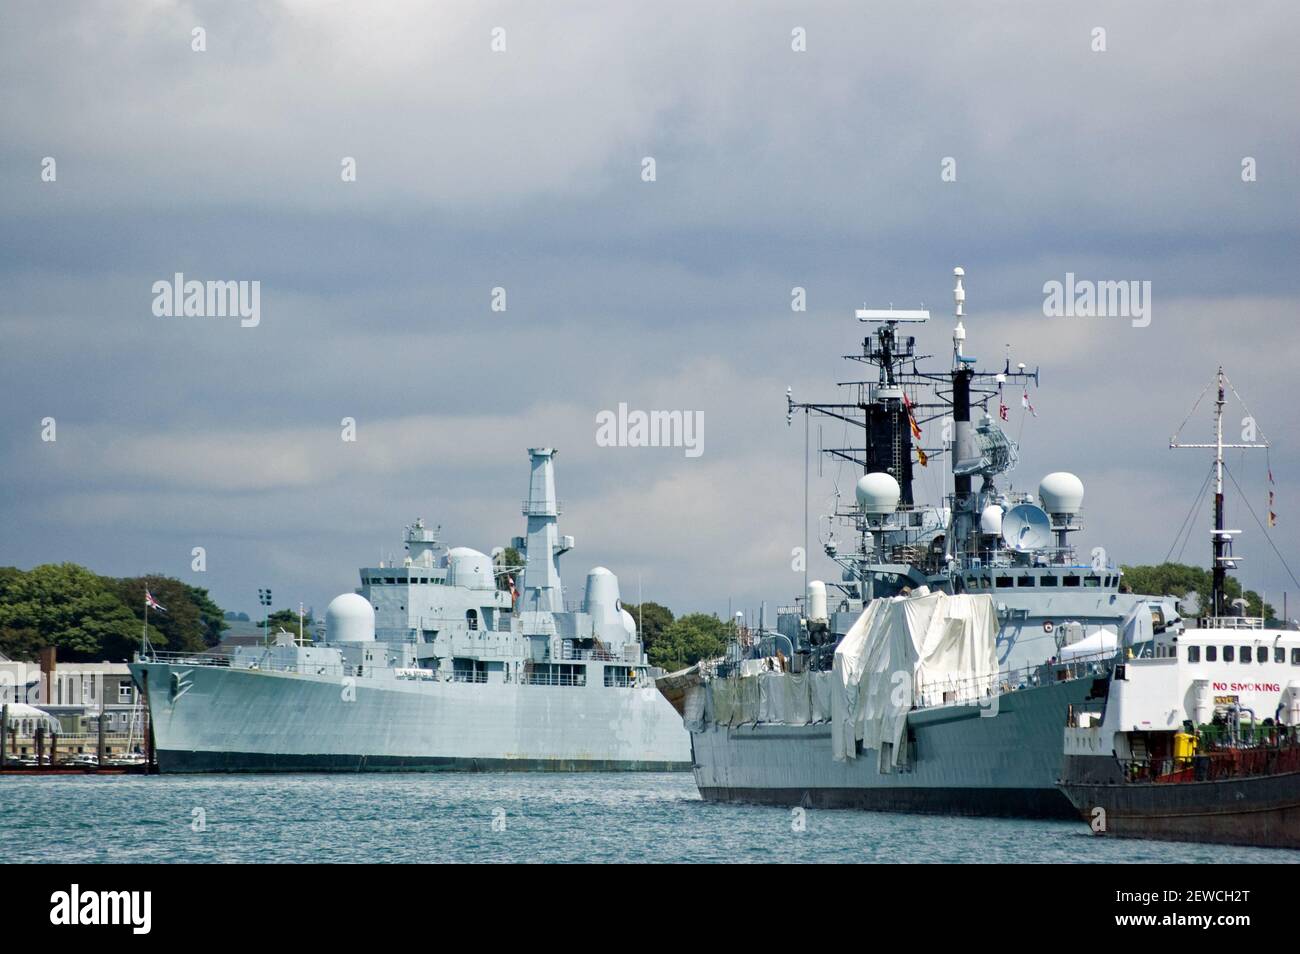 Navires de la Royal Navy à Portsmouth Dockyard, Hampshire. Un destructeur se trouve sur le côté gauche de l'image. Banque D'Images